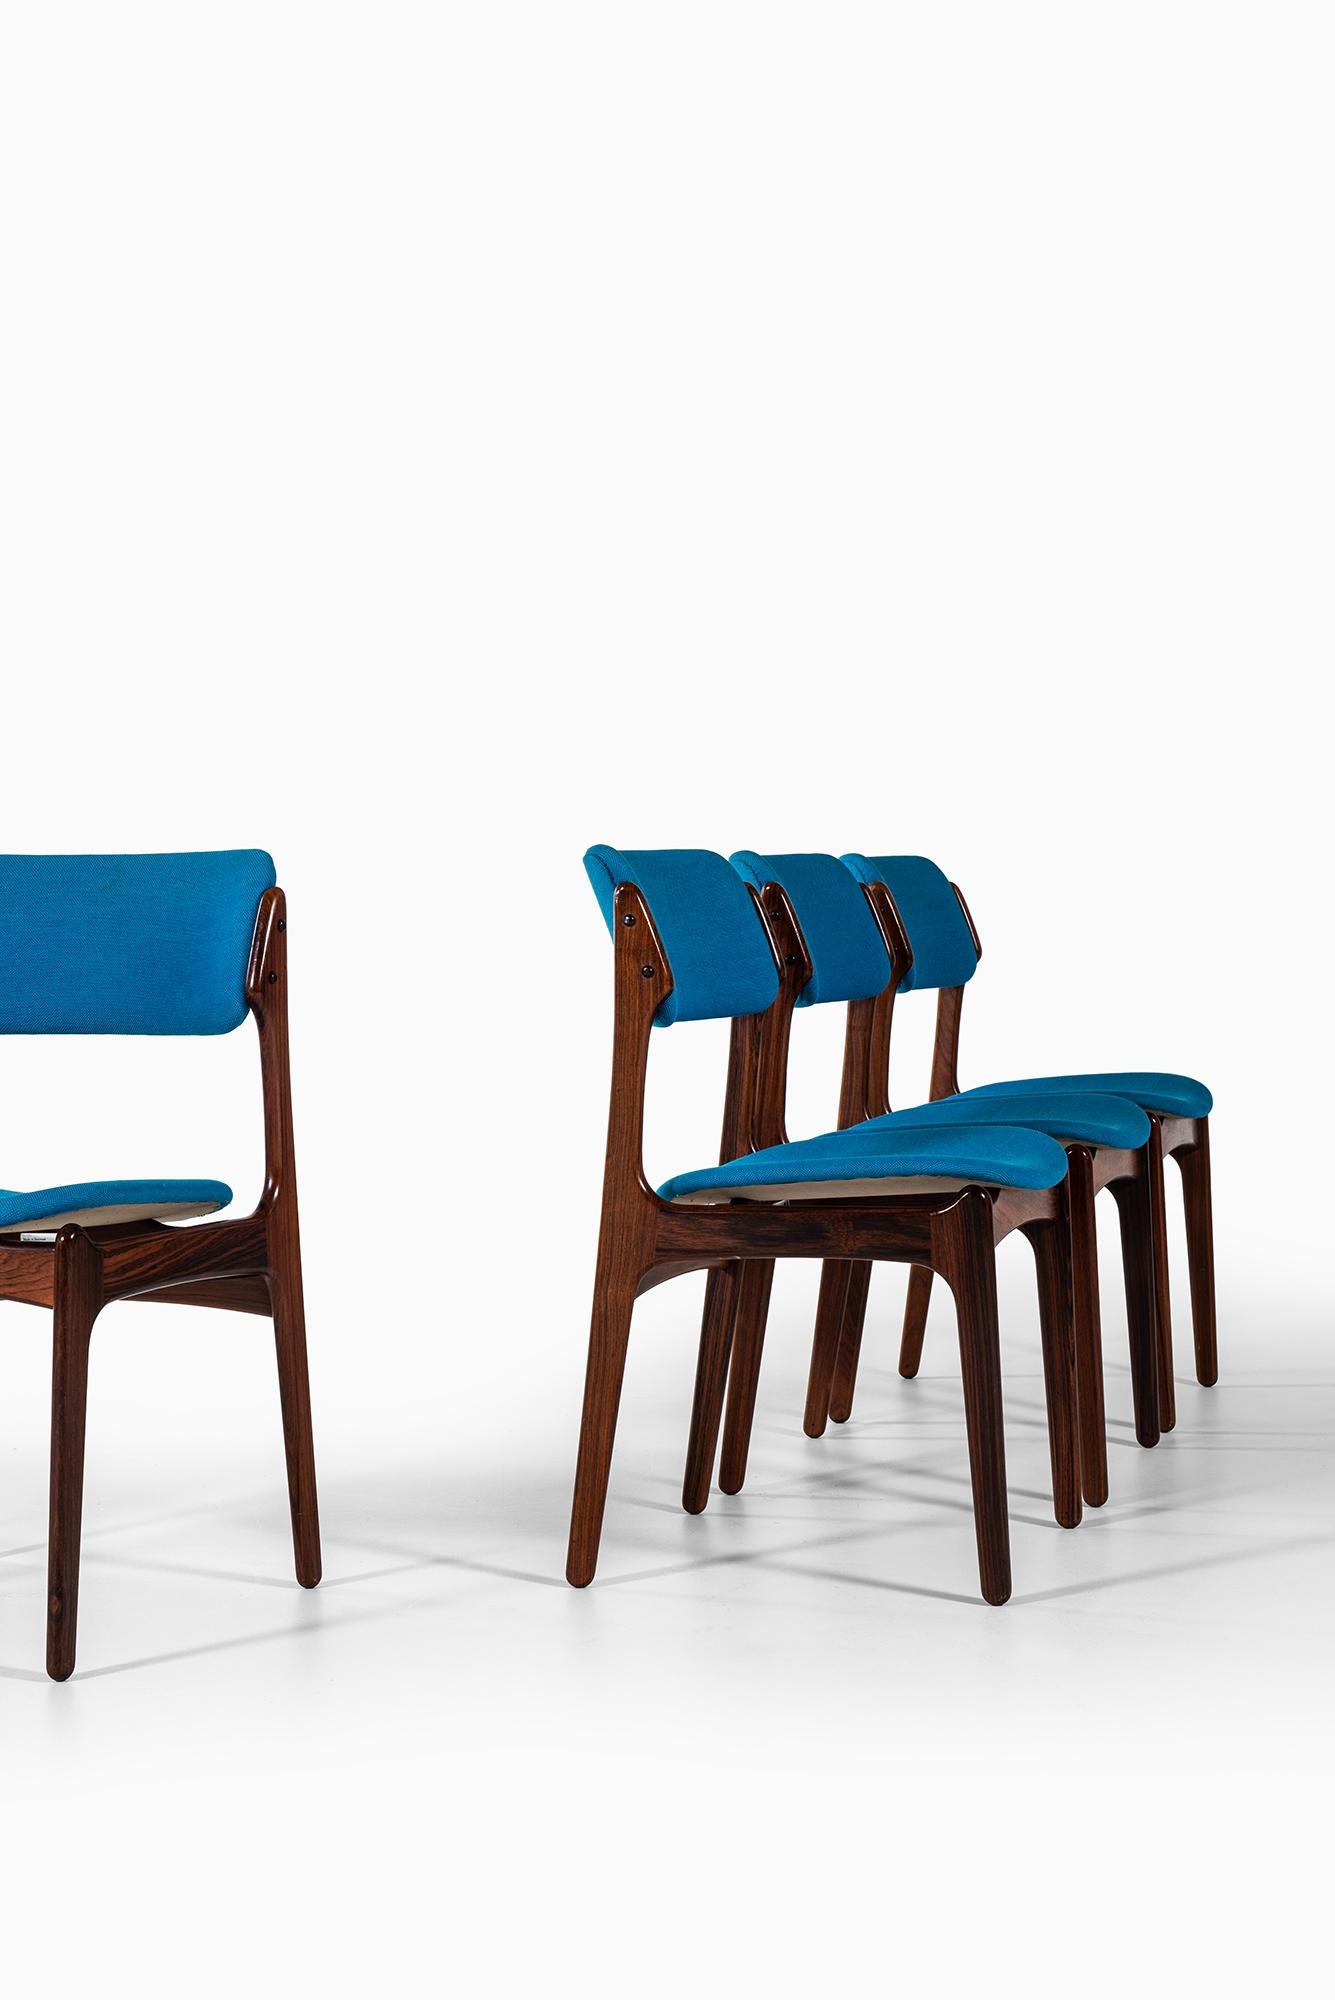 Rare ensemble de six chaises de salle à manger modèle OD-49 conçu par Erik Buck. Produit par Oddense maskinsnedkeri A/S au Danemark.